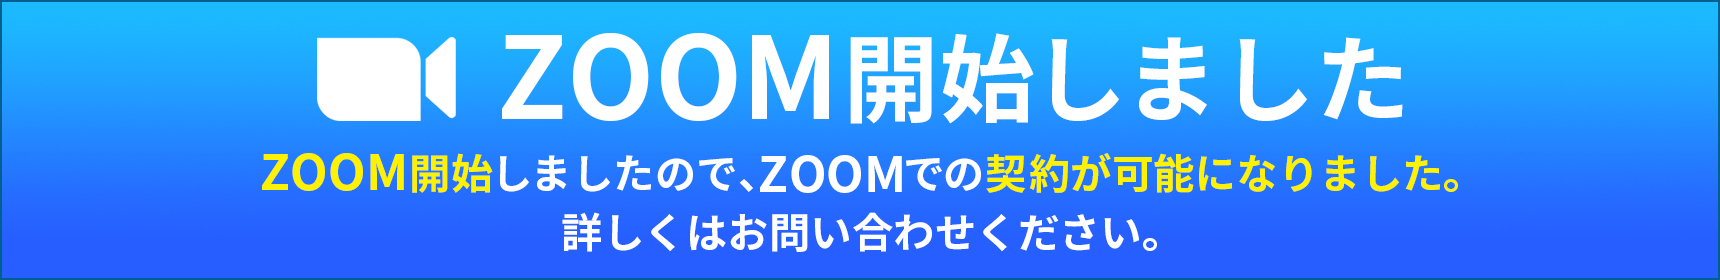 ZOOM開始しました　ZOOM開始しましたので、ZOOMでの契約が可能になりました。
詳しくはお問い合わせください。